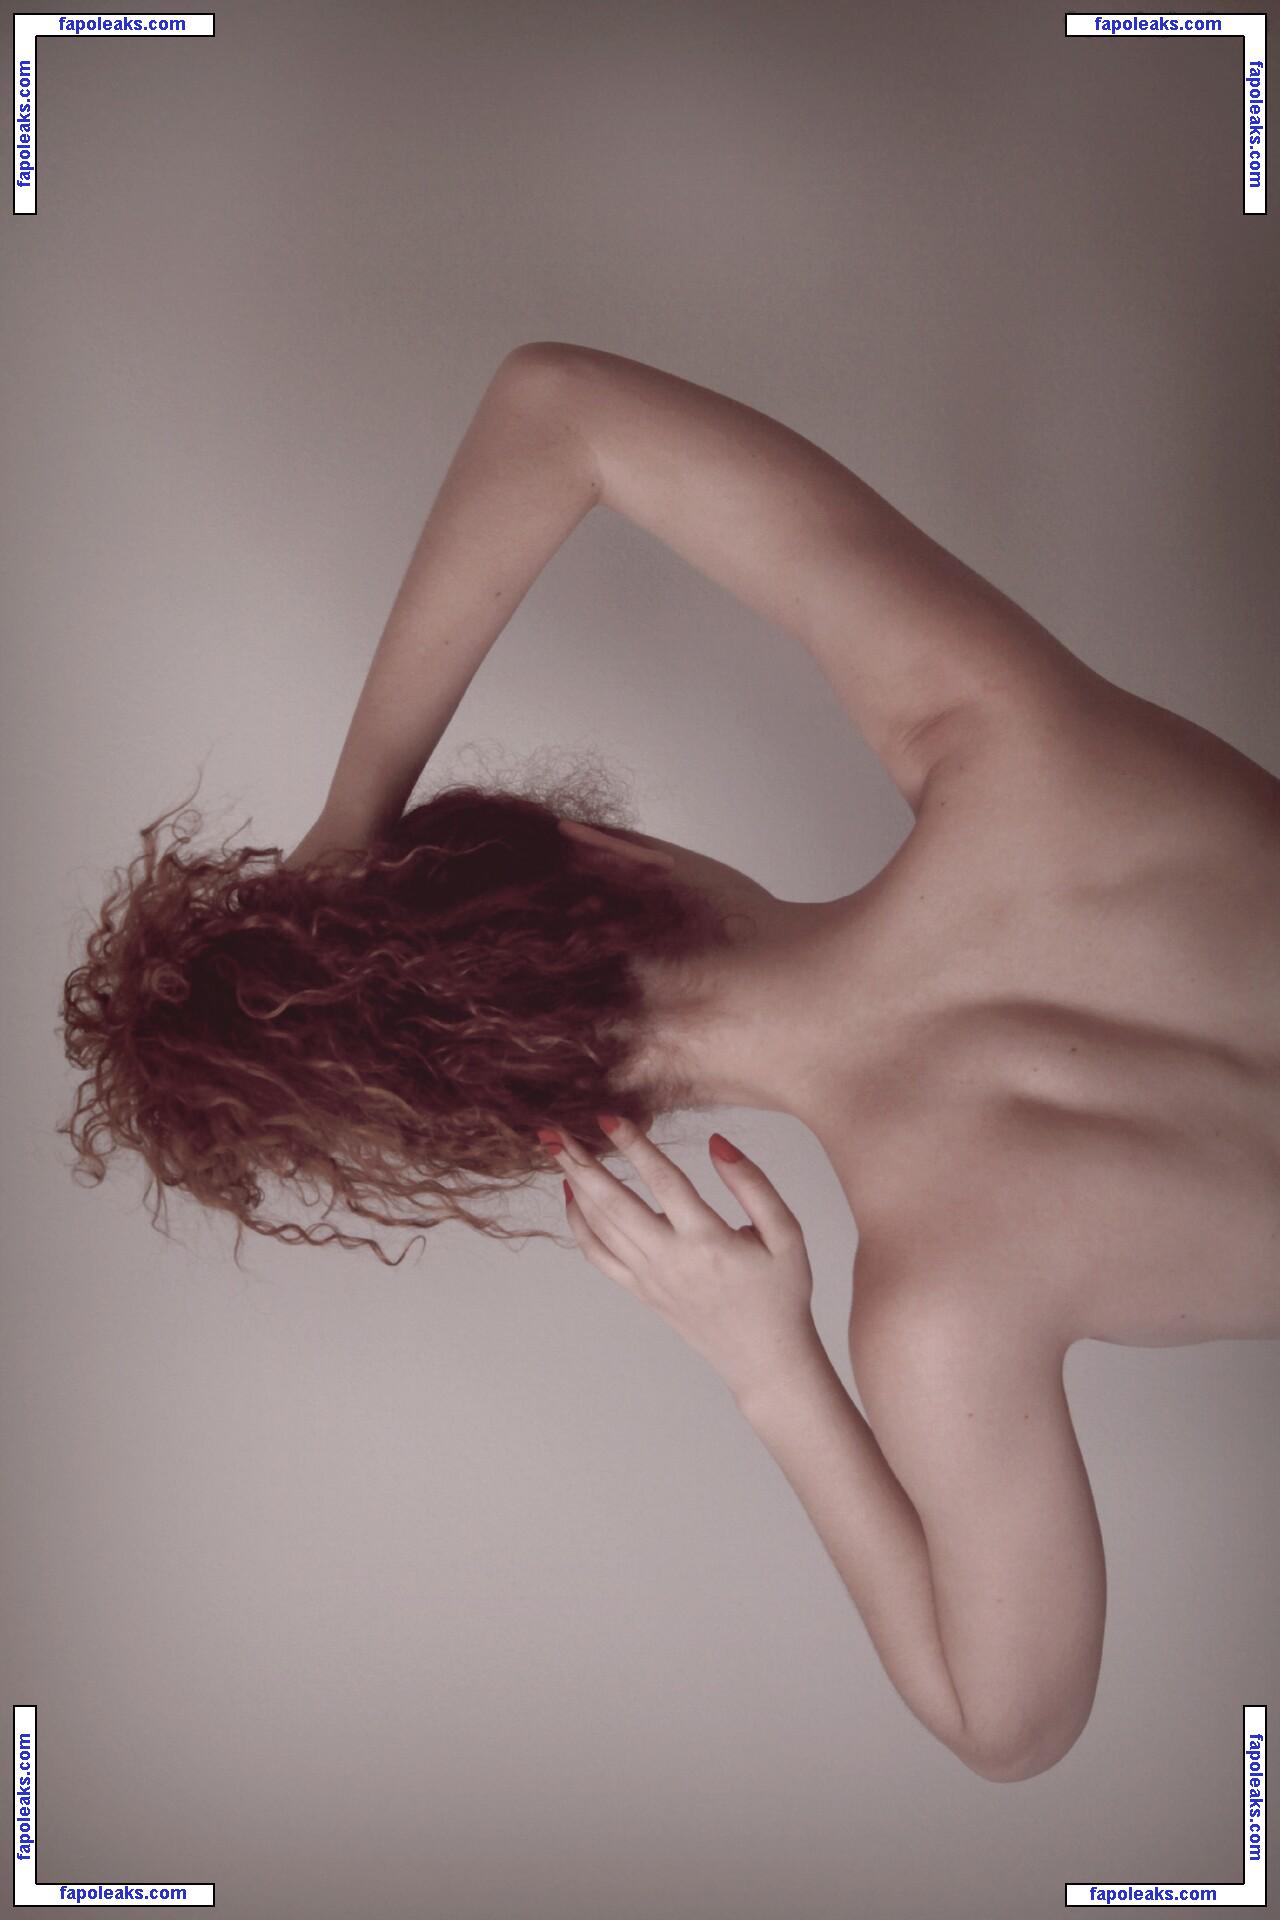 Joana Lapa / joanalapa nude photo #0006 from OnlyFans